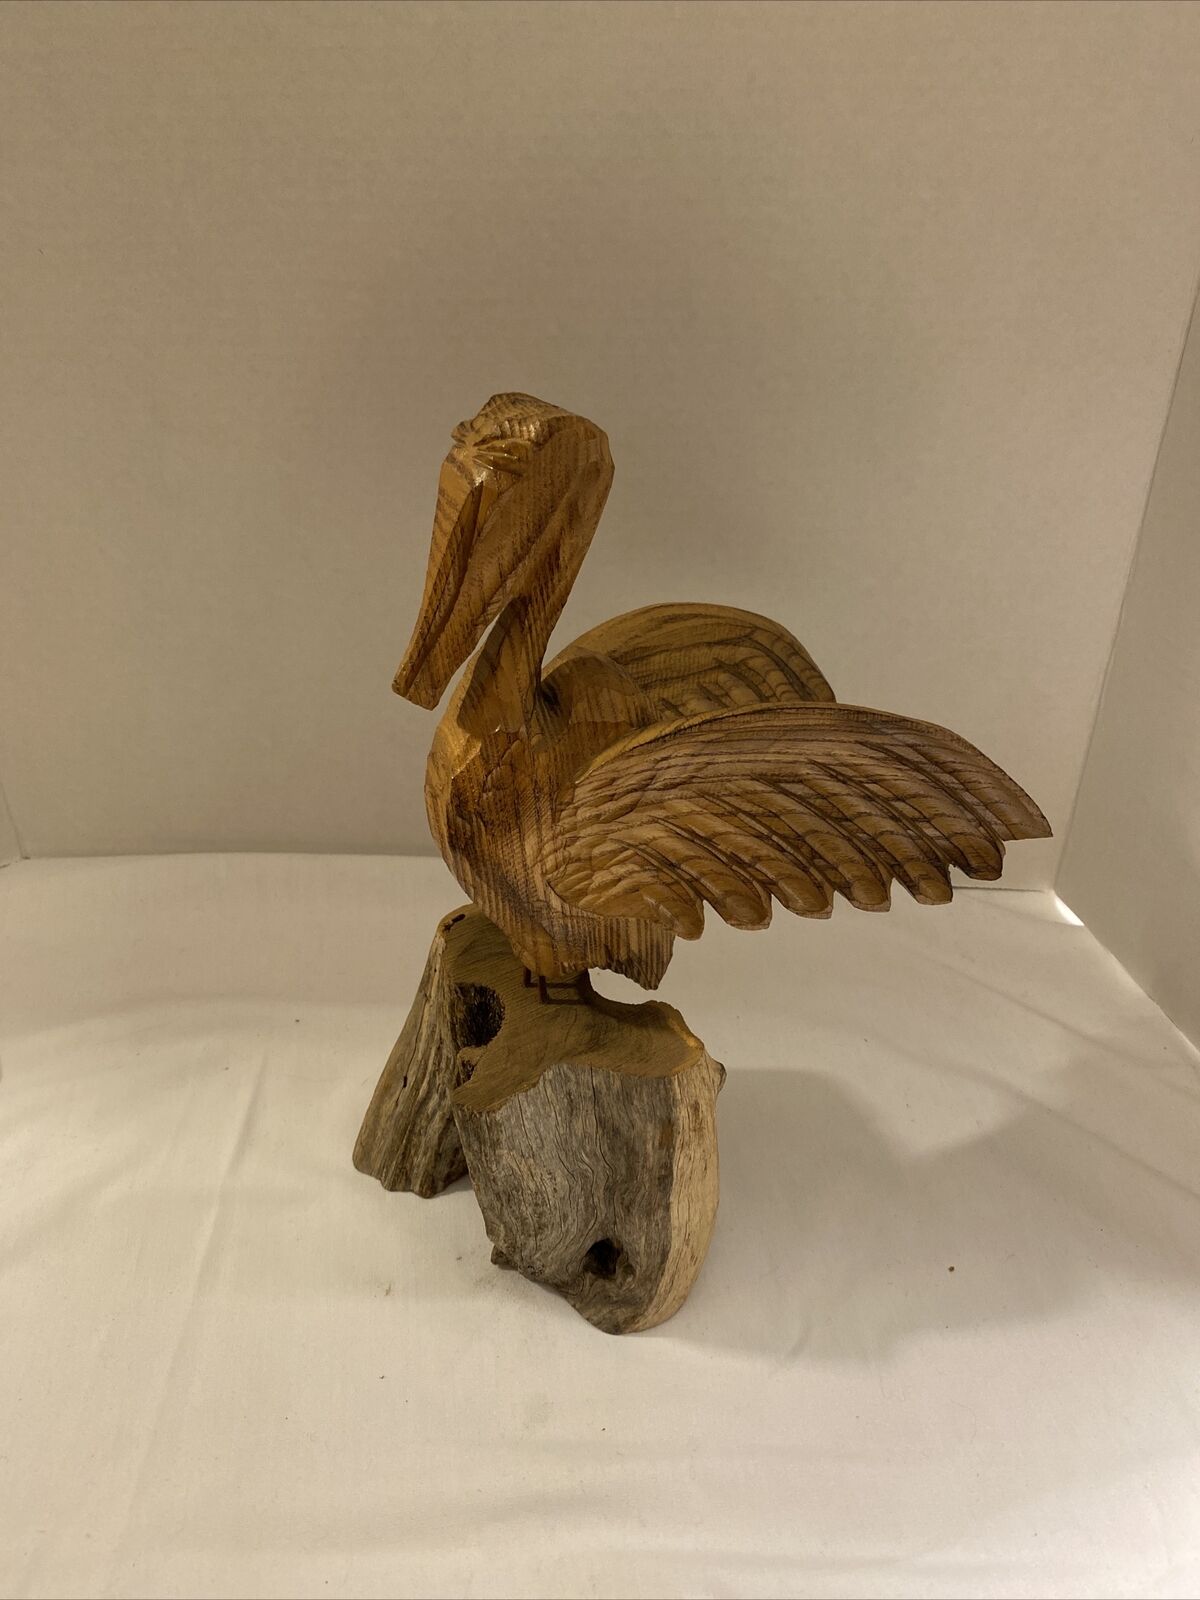 Drift Wood Pelican Folk Art Sculpture Carved Shore Bird Figurine